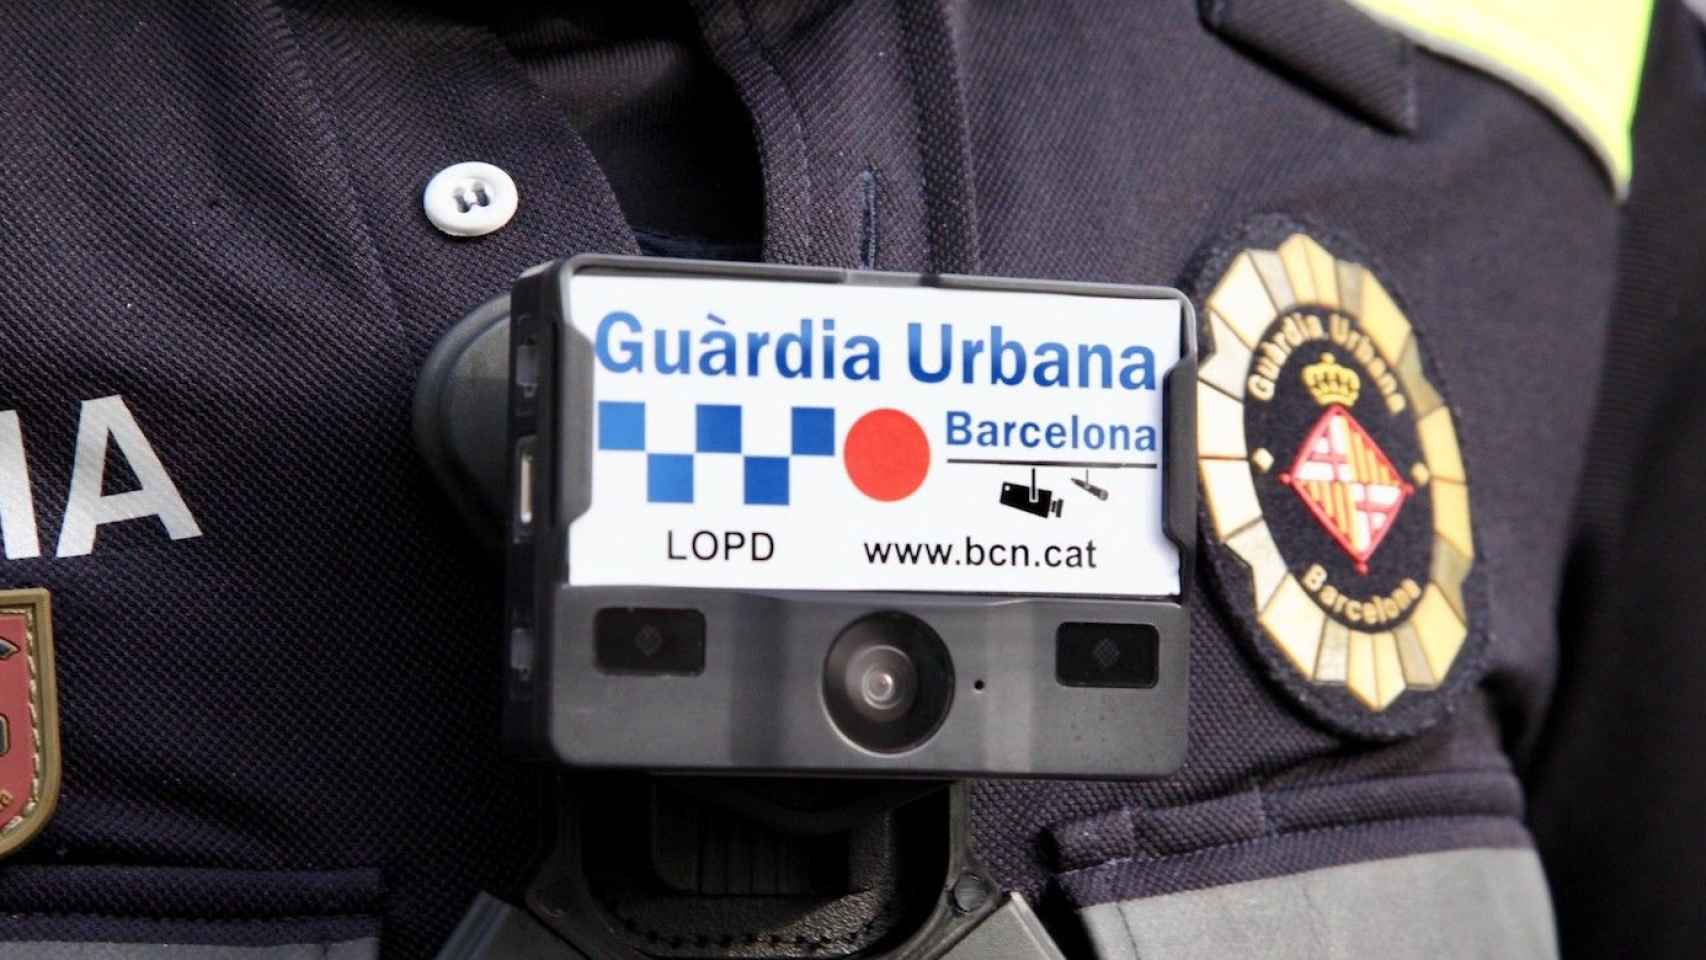 Una cámara unipersonal en el pecho de un agente de la Guardia Urbana / AYUNTAMIENTO DE BARCELONA